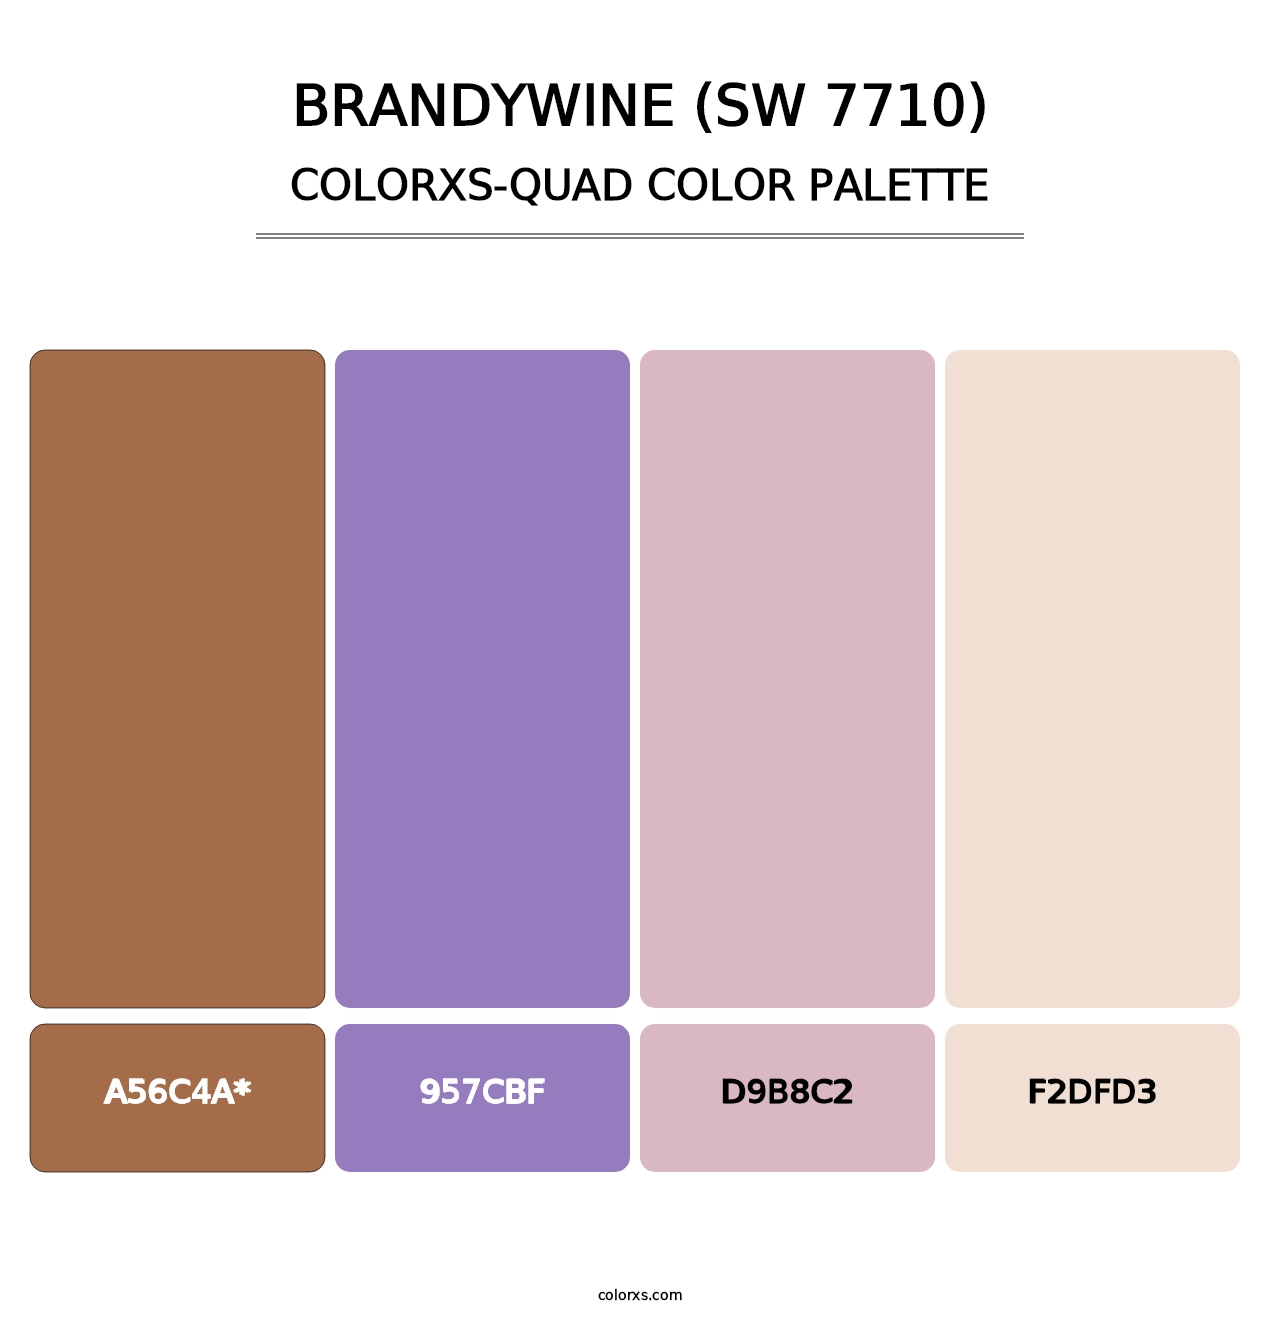 Brandywine (SW 7710) - Colorxs Quad Palette